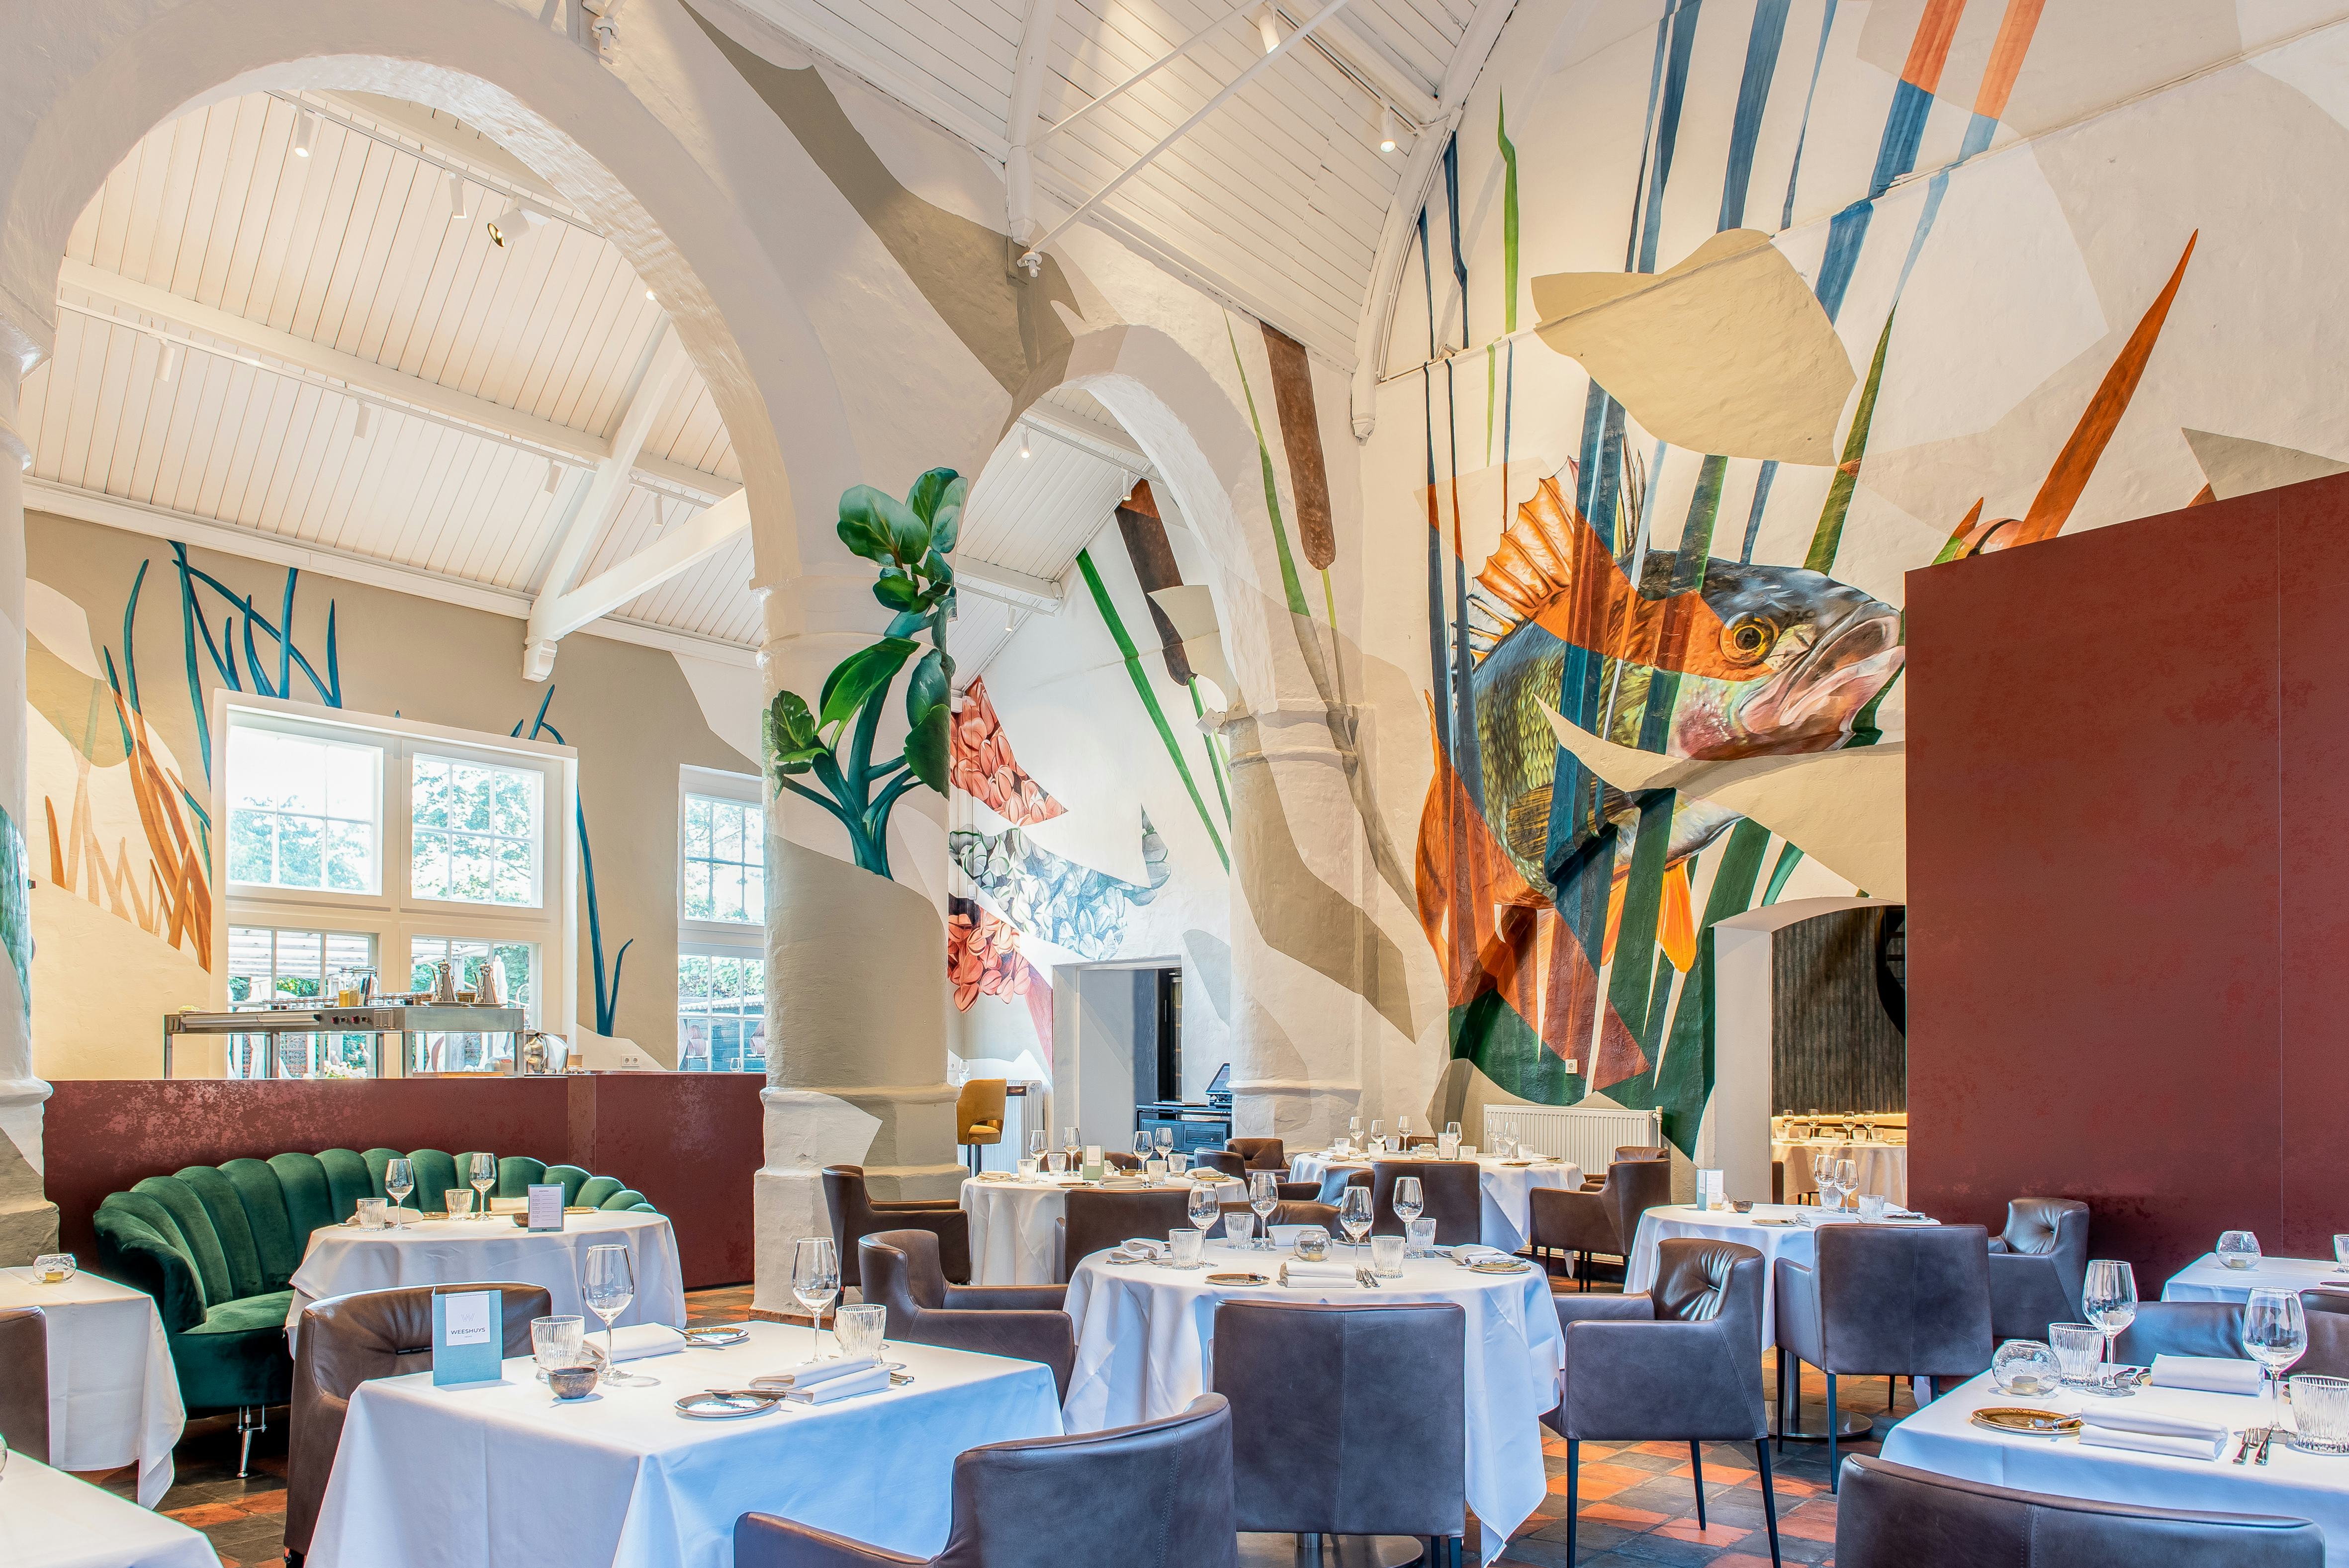 Restaurant Het Weeshuys neemt bij restyling historie en streek als inspiratiebron